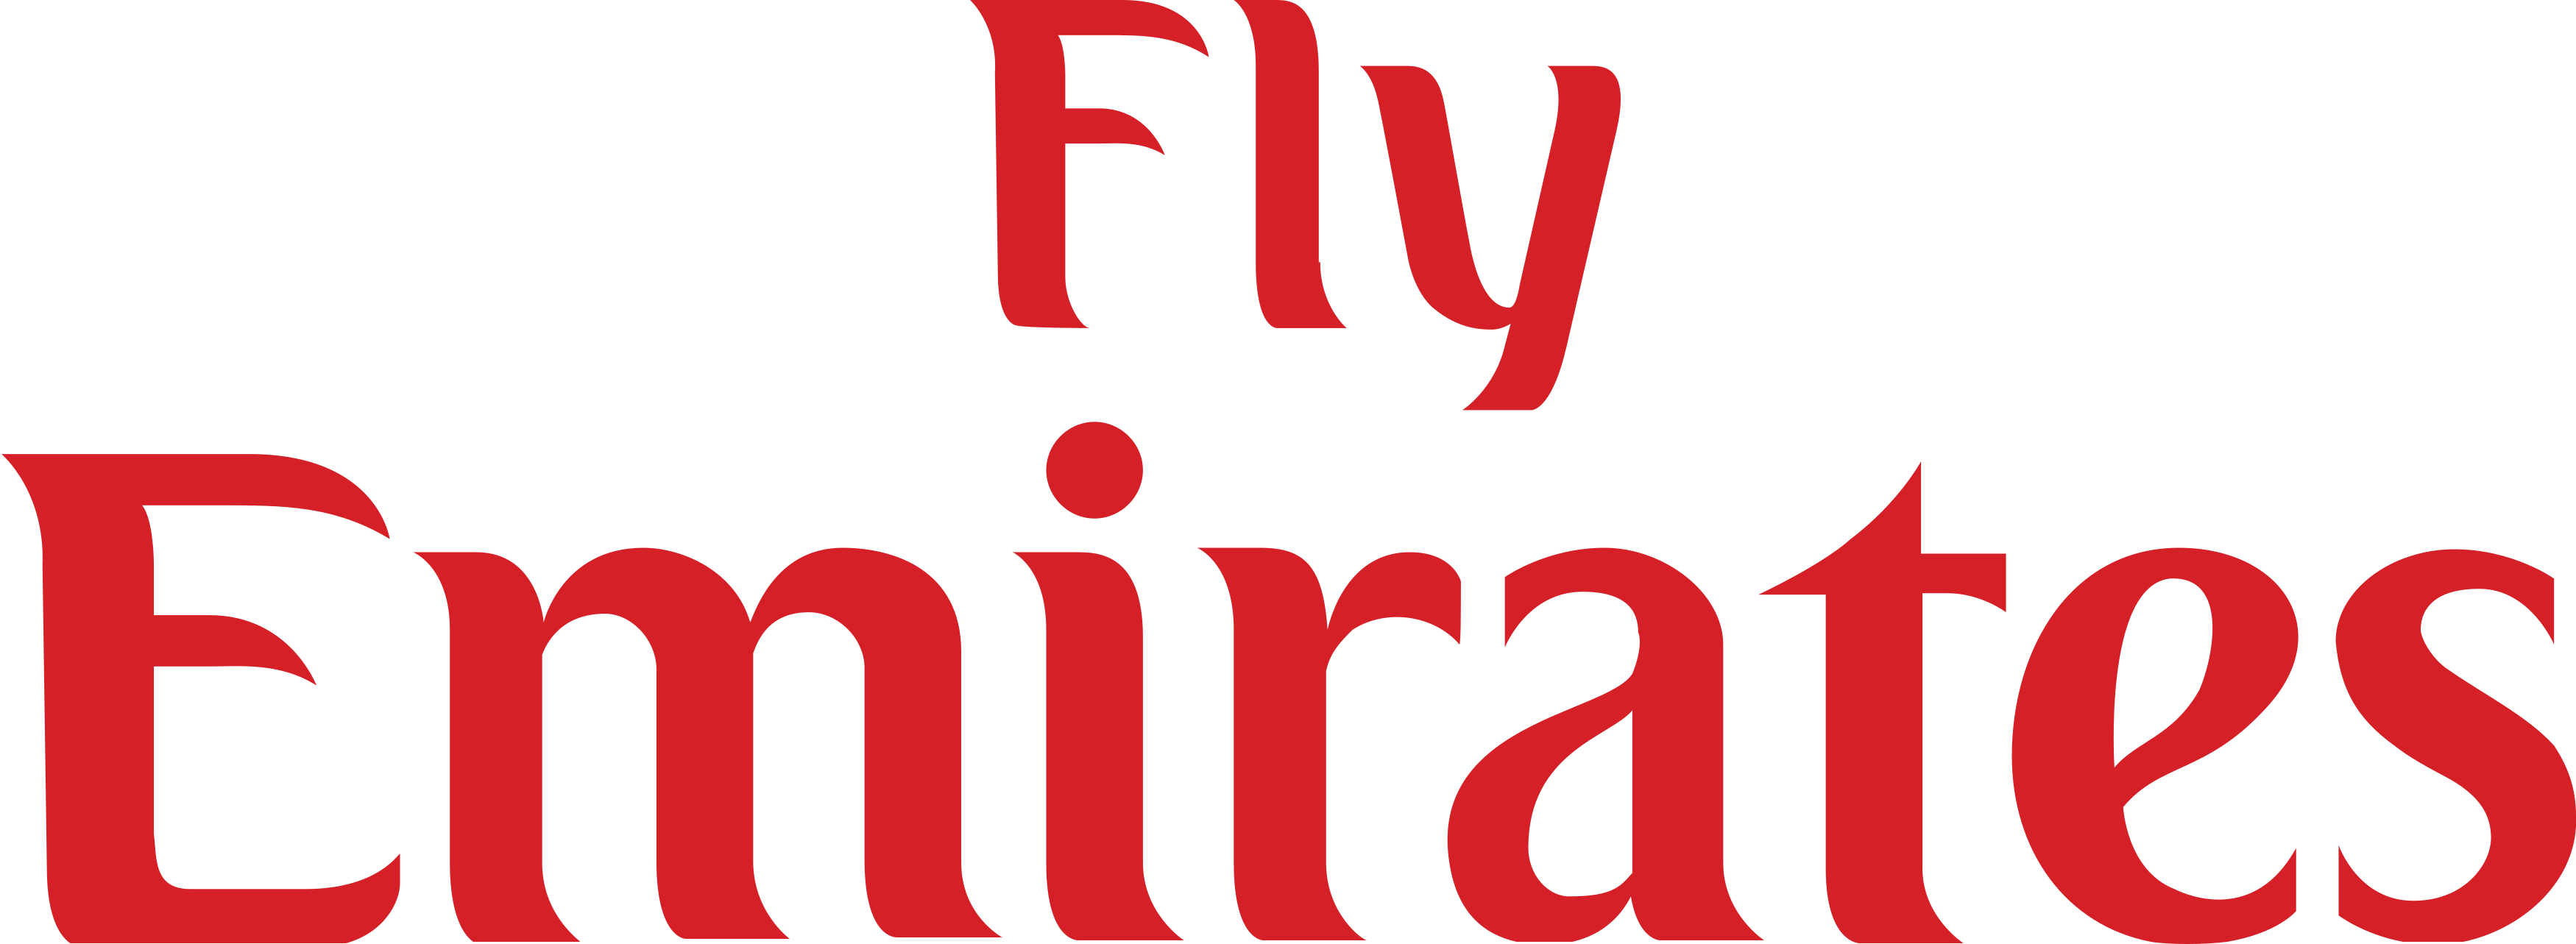 Fly Emirates Logo.